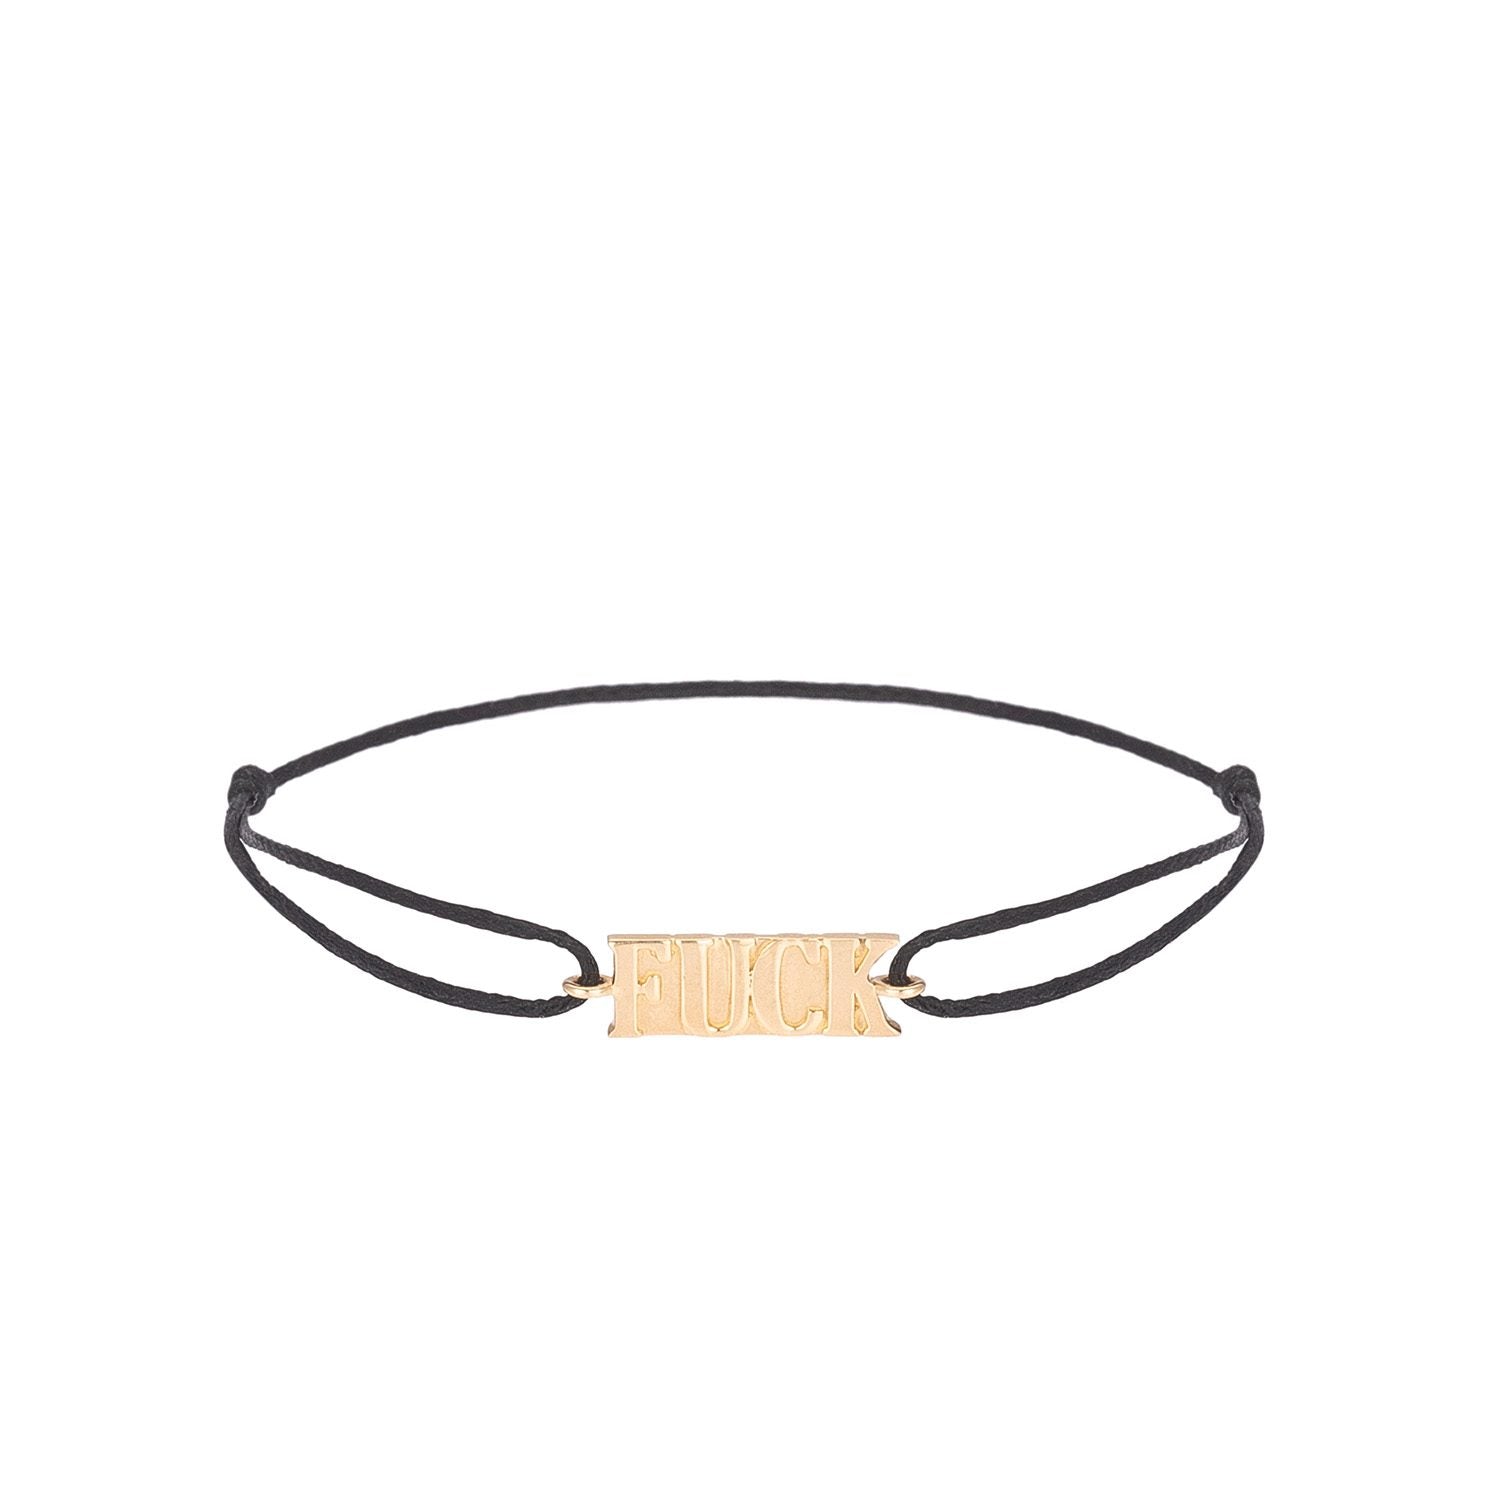 Sarong Gold Cord Bracelet